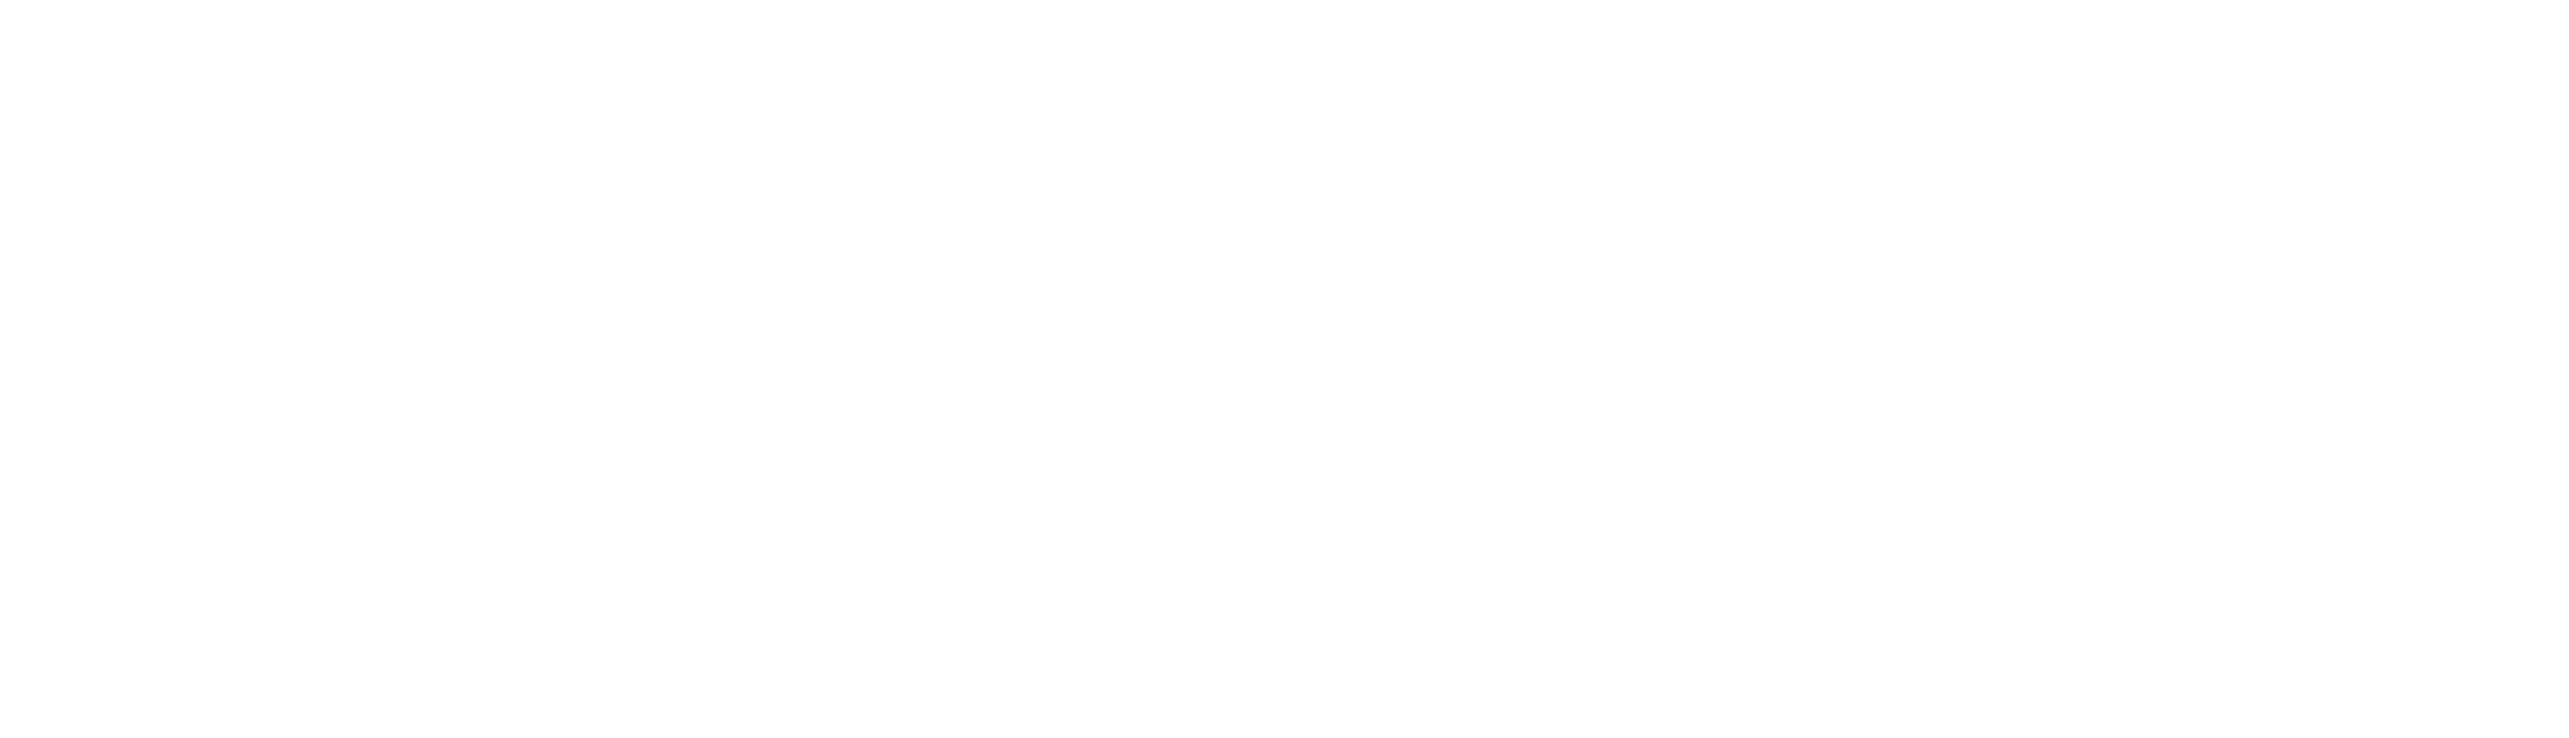 Mosaic Christian Church Logo